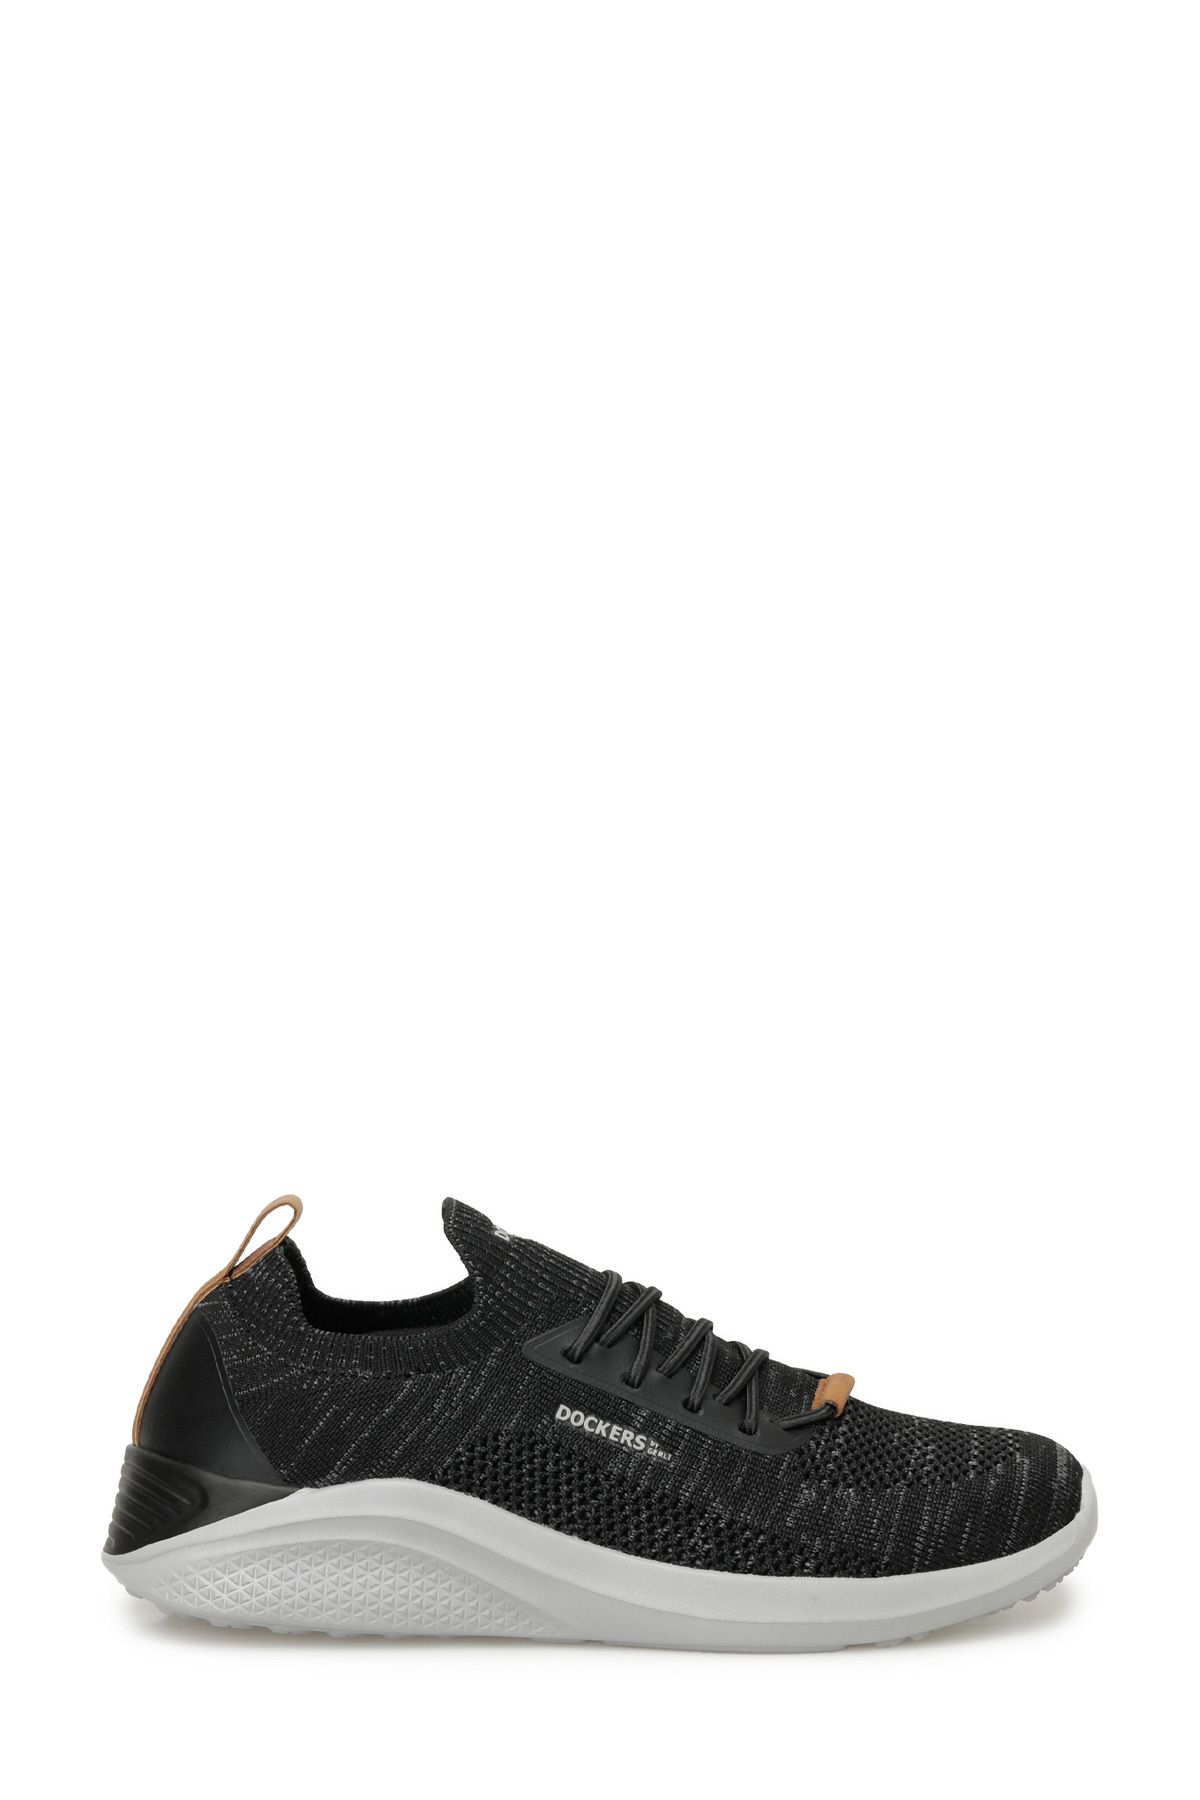 Dockers 236570 4FX Siyah Erkek Ayakkabı